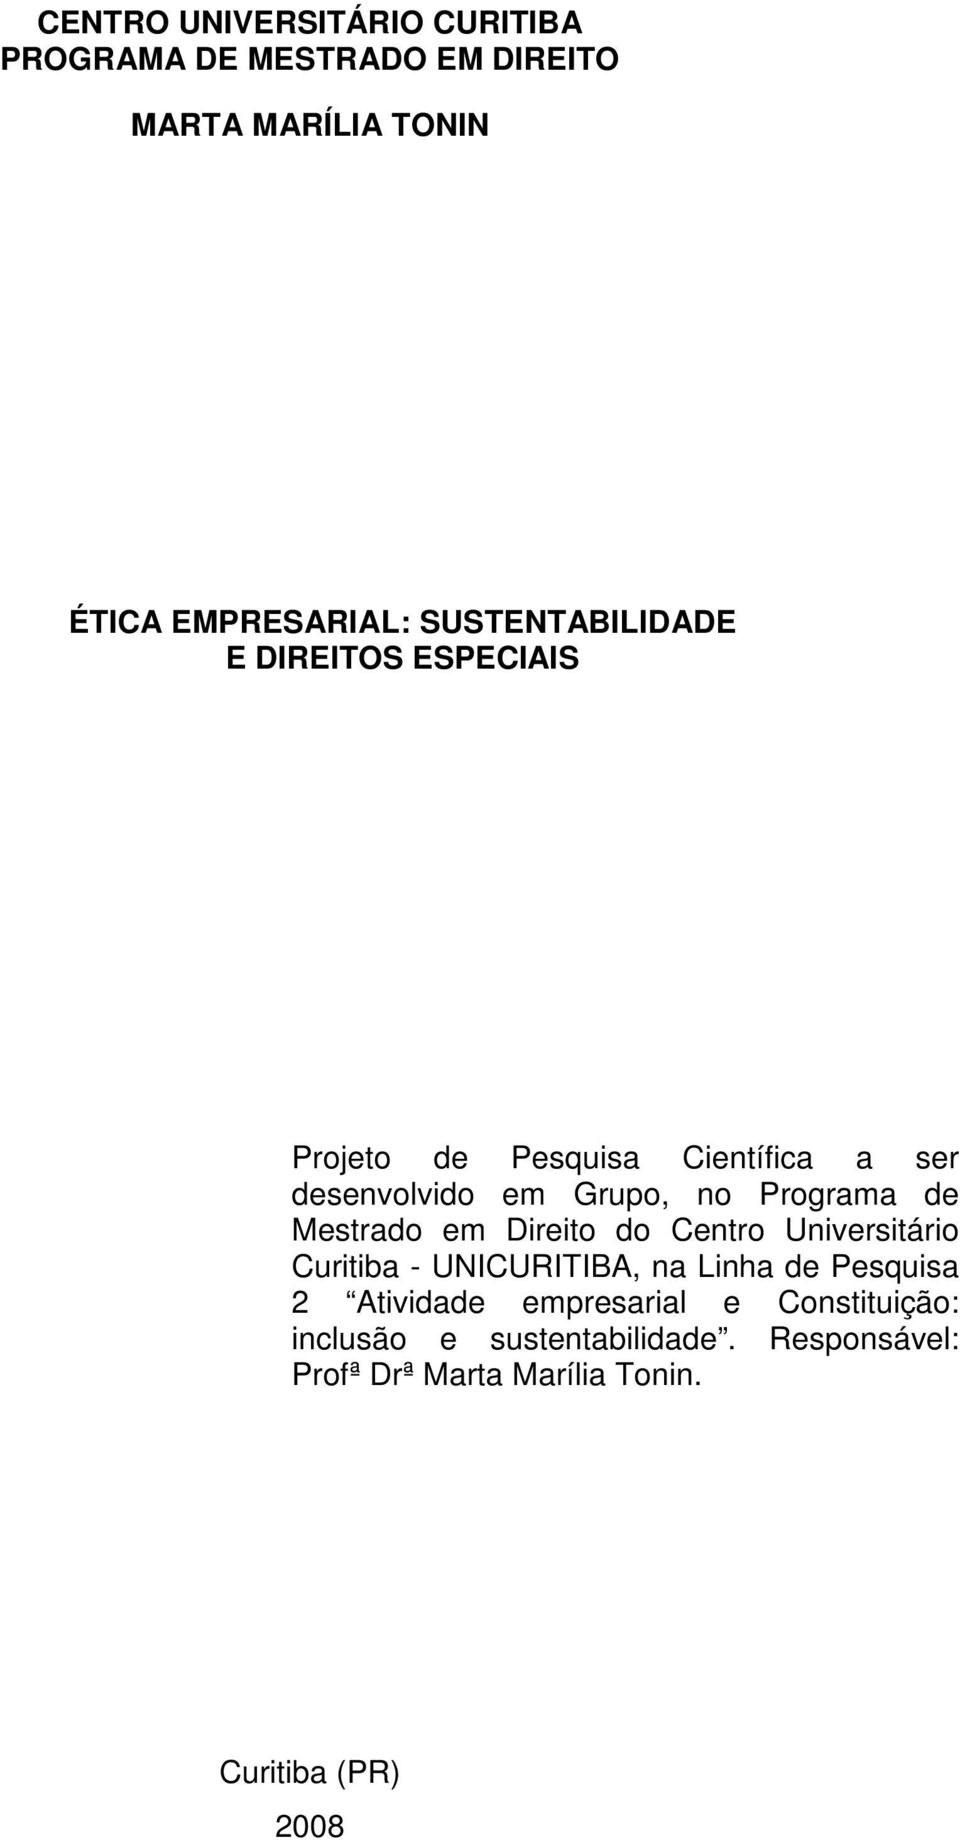 Programa de Mestrado em Direito do Centro Universitário Curitiba - UNICURITIBA, na Linha de Pesquisa 2